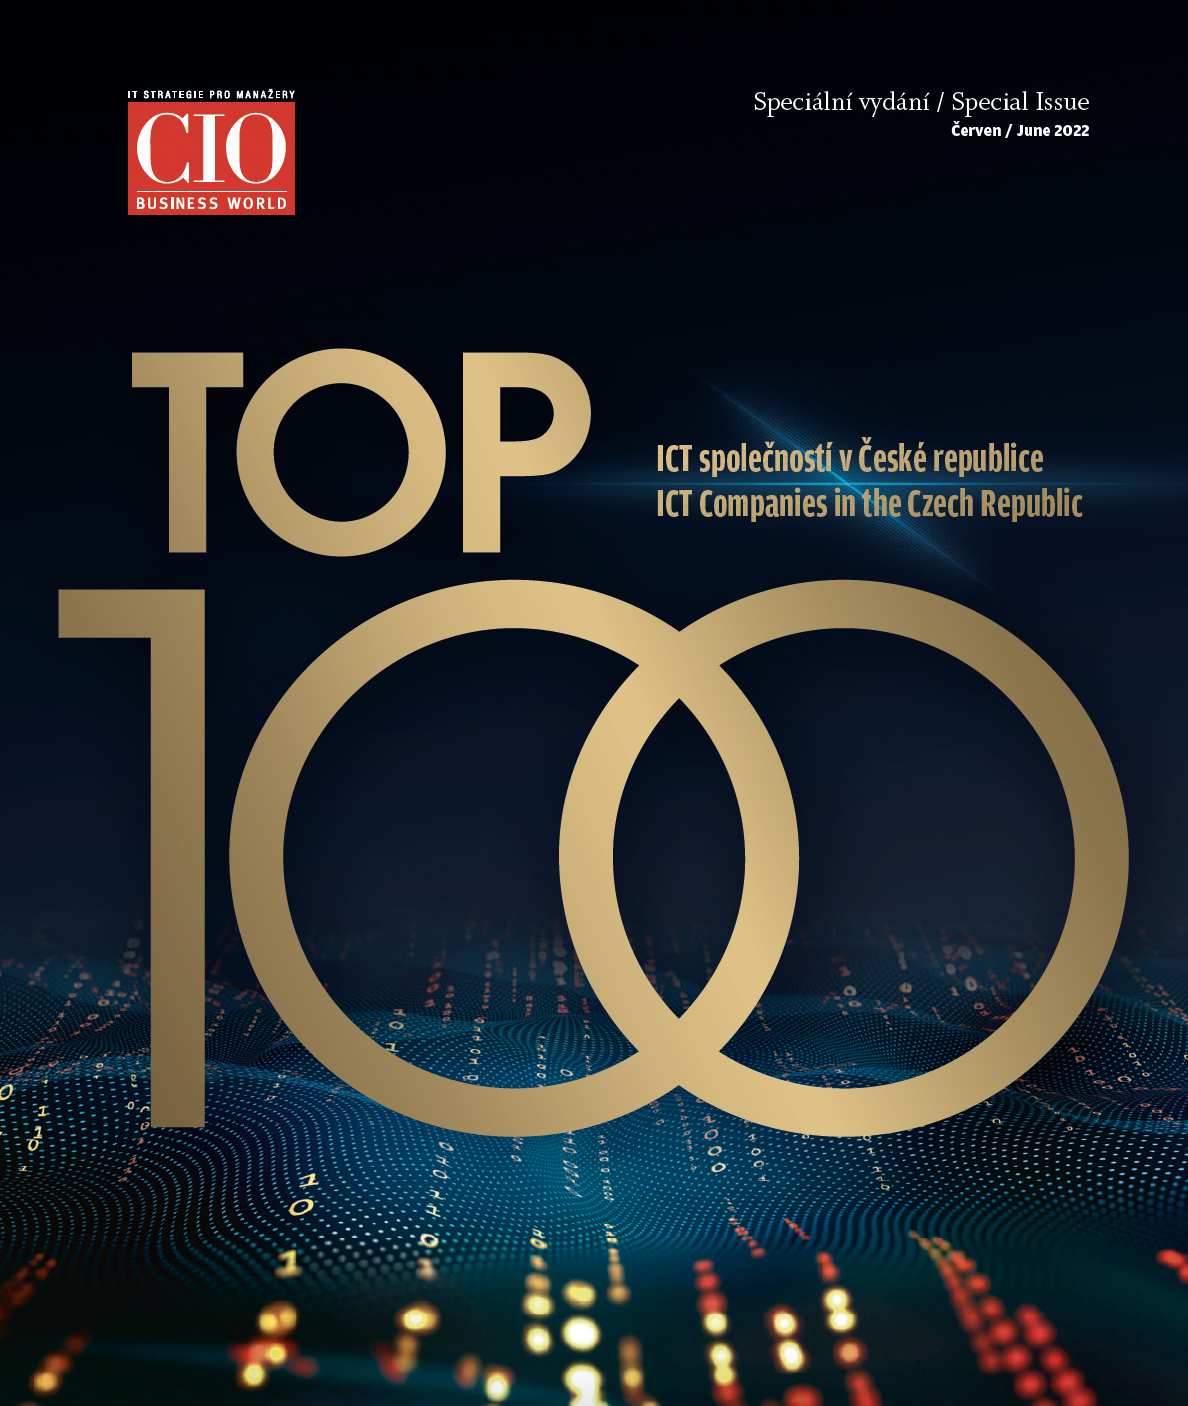 IDG TOP 100 firem v IT na českém trhu a jejich výsledky za rok 2021 (vydání červen / June 2022)